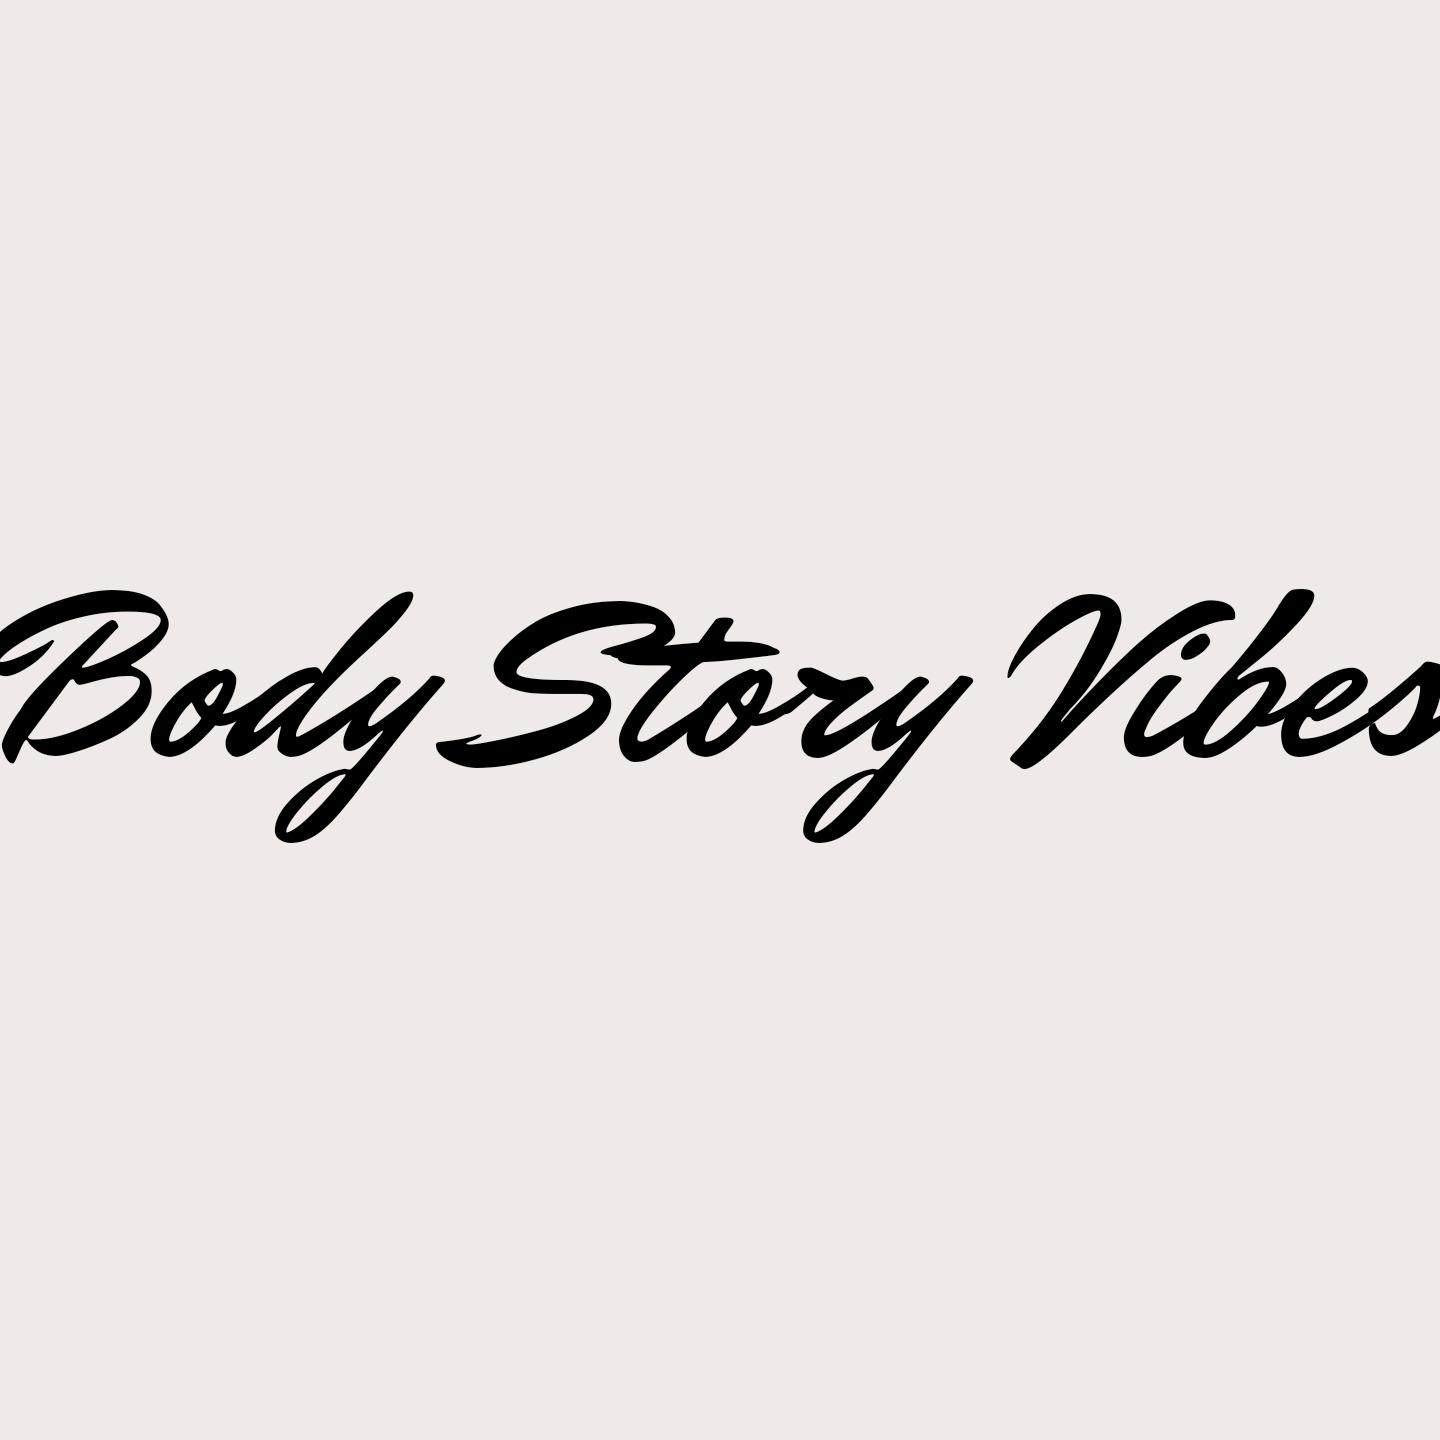 Gambar Body stories